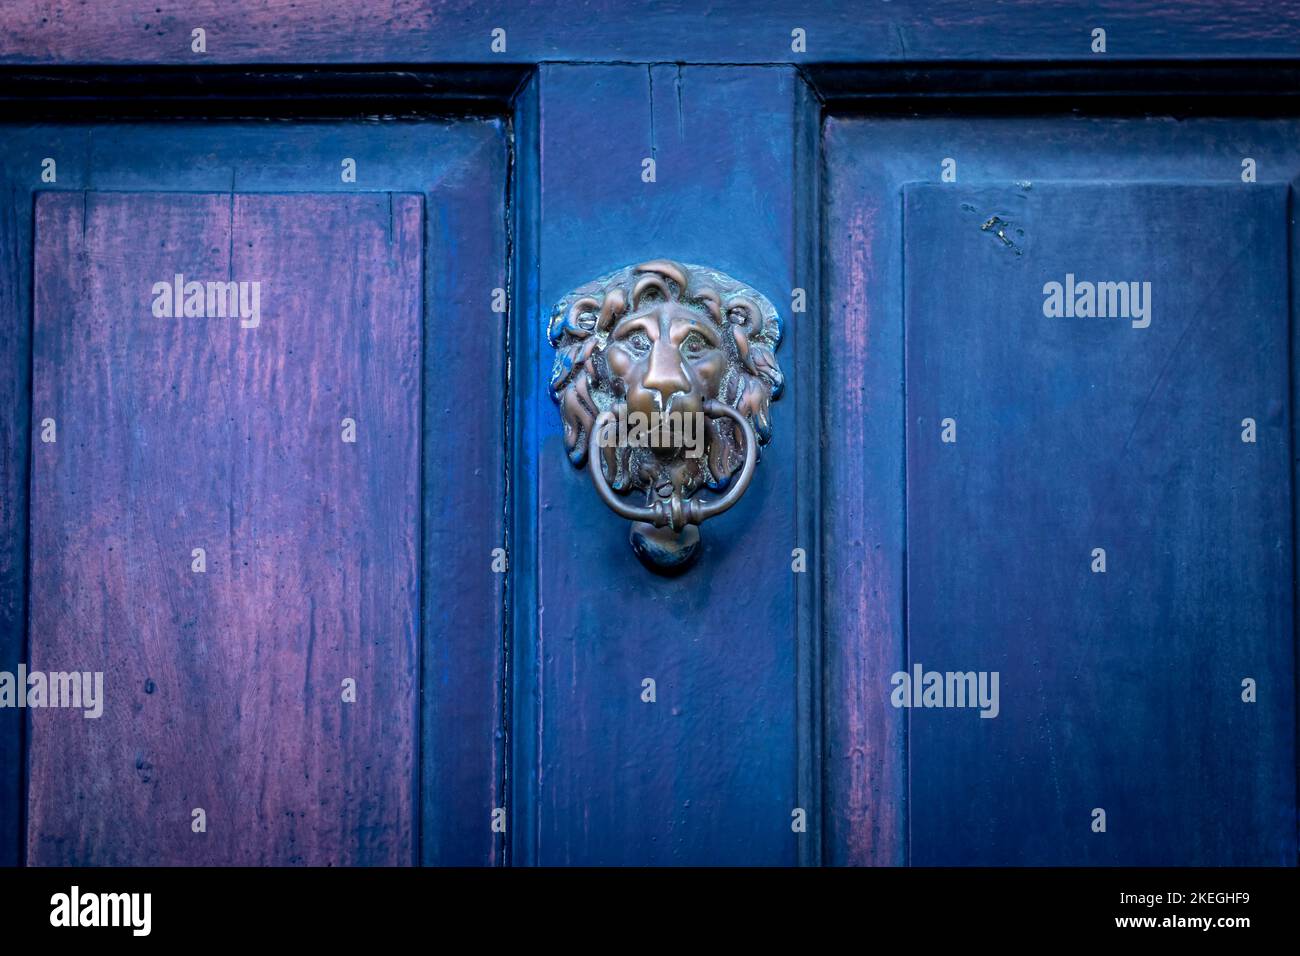 Lion's head door knocker on a blue wooden front door Stock Photo